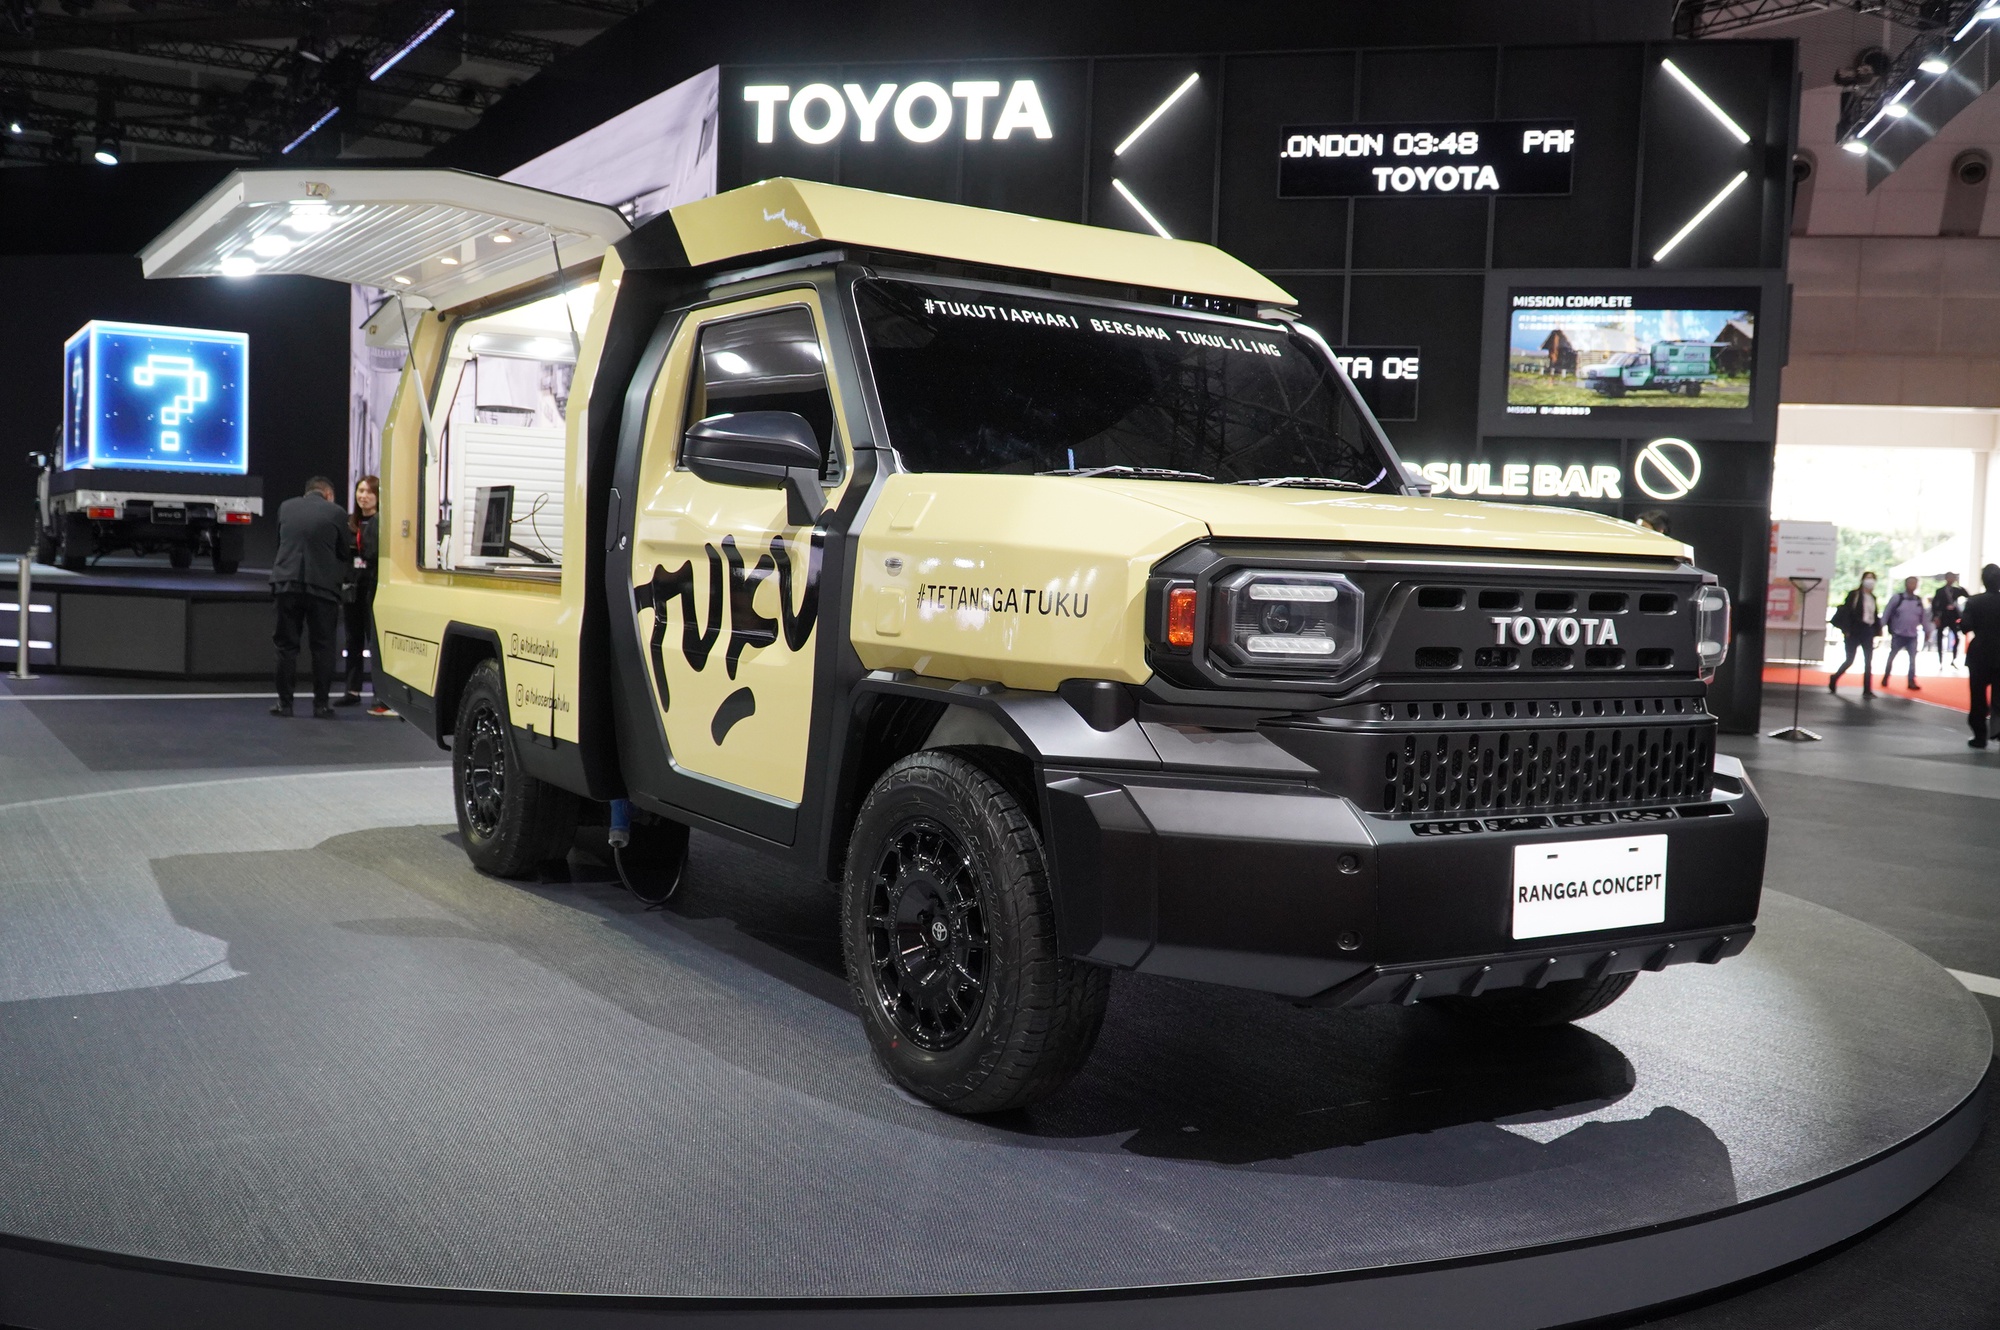 Toyota Rangga 'biến hình' như tắc kè,ếnhìnhnhưtắckègiáthấphơ<strong>sxmb</strong> giá rẻ hơn Hilux   - Ảnh 1.